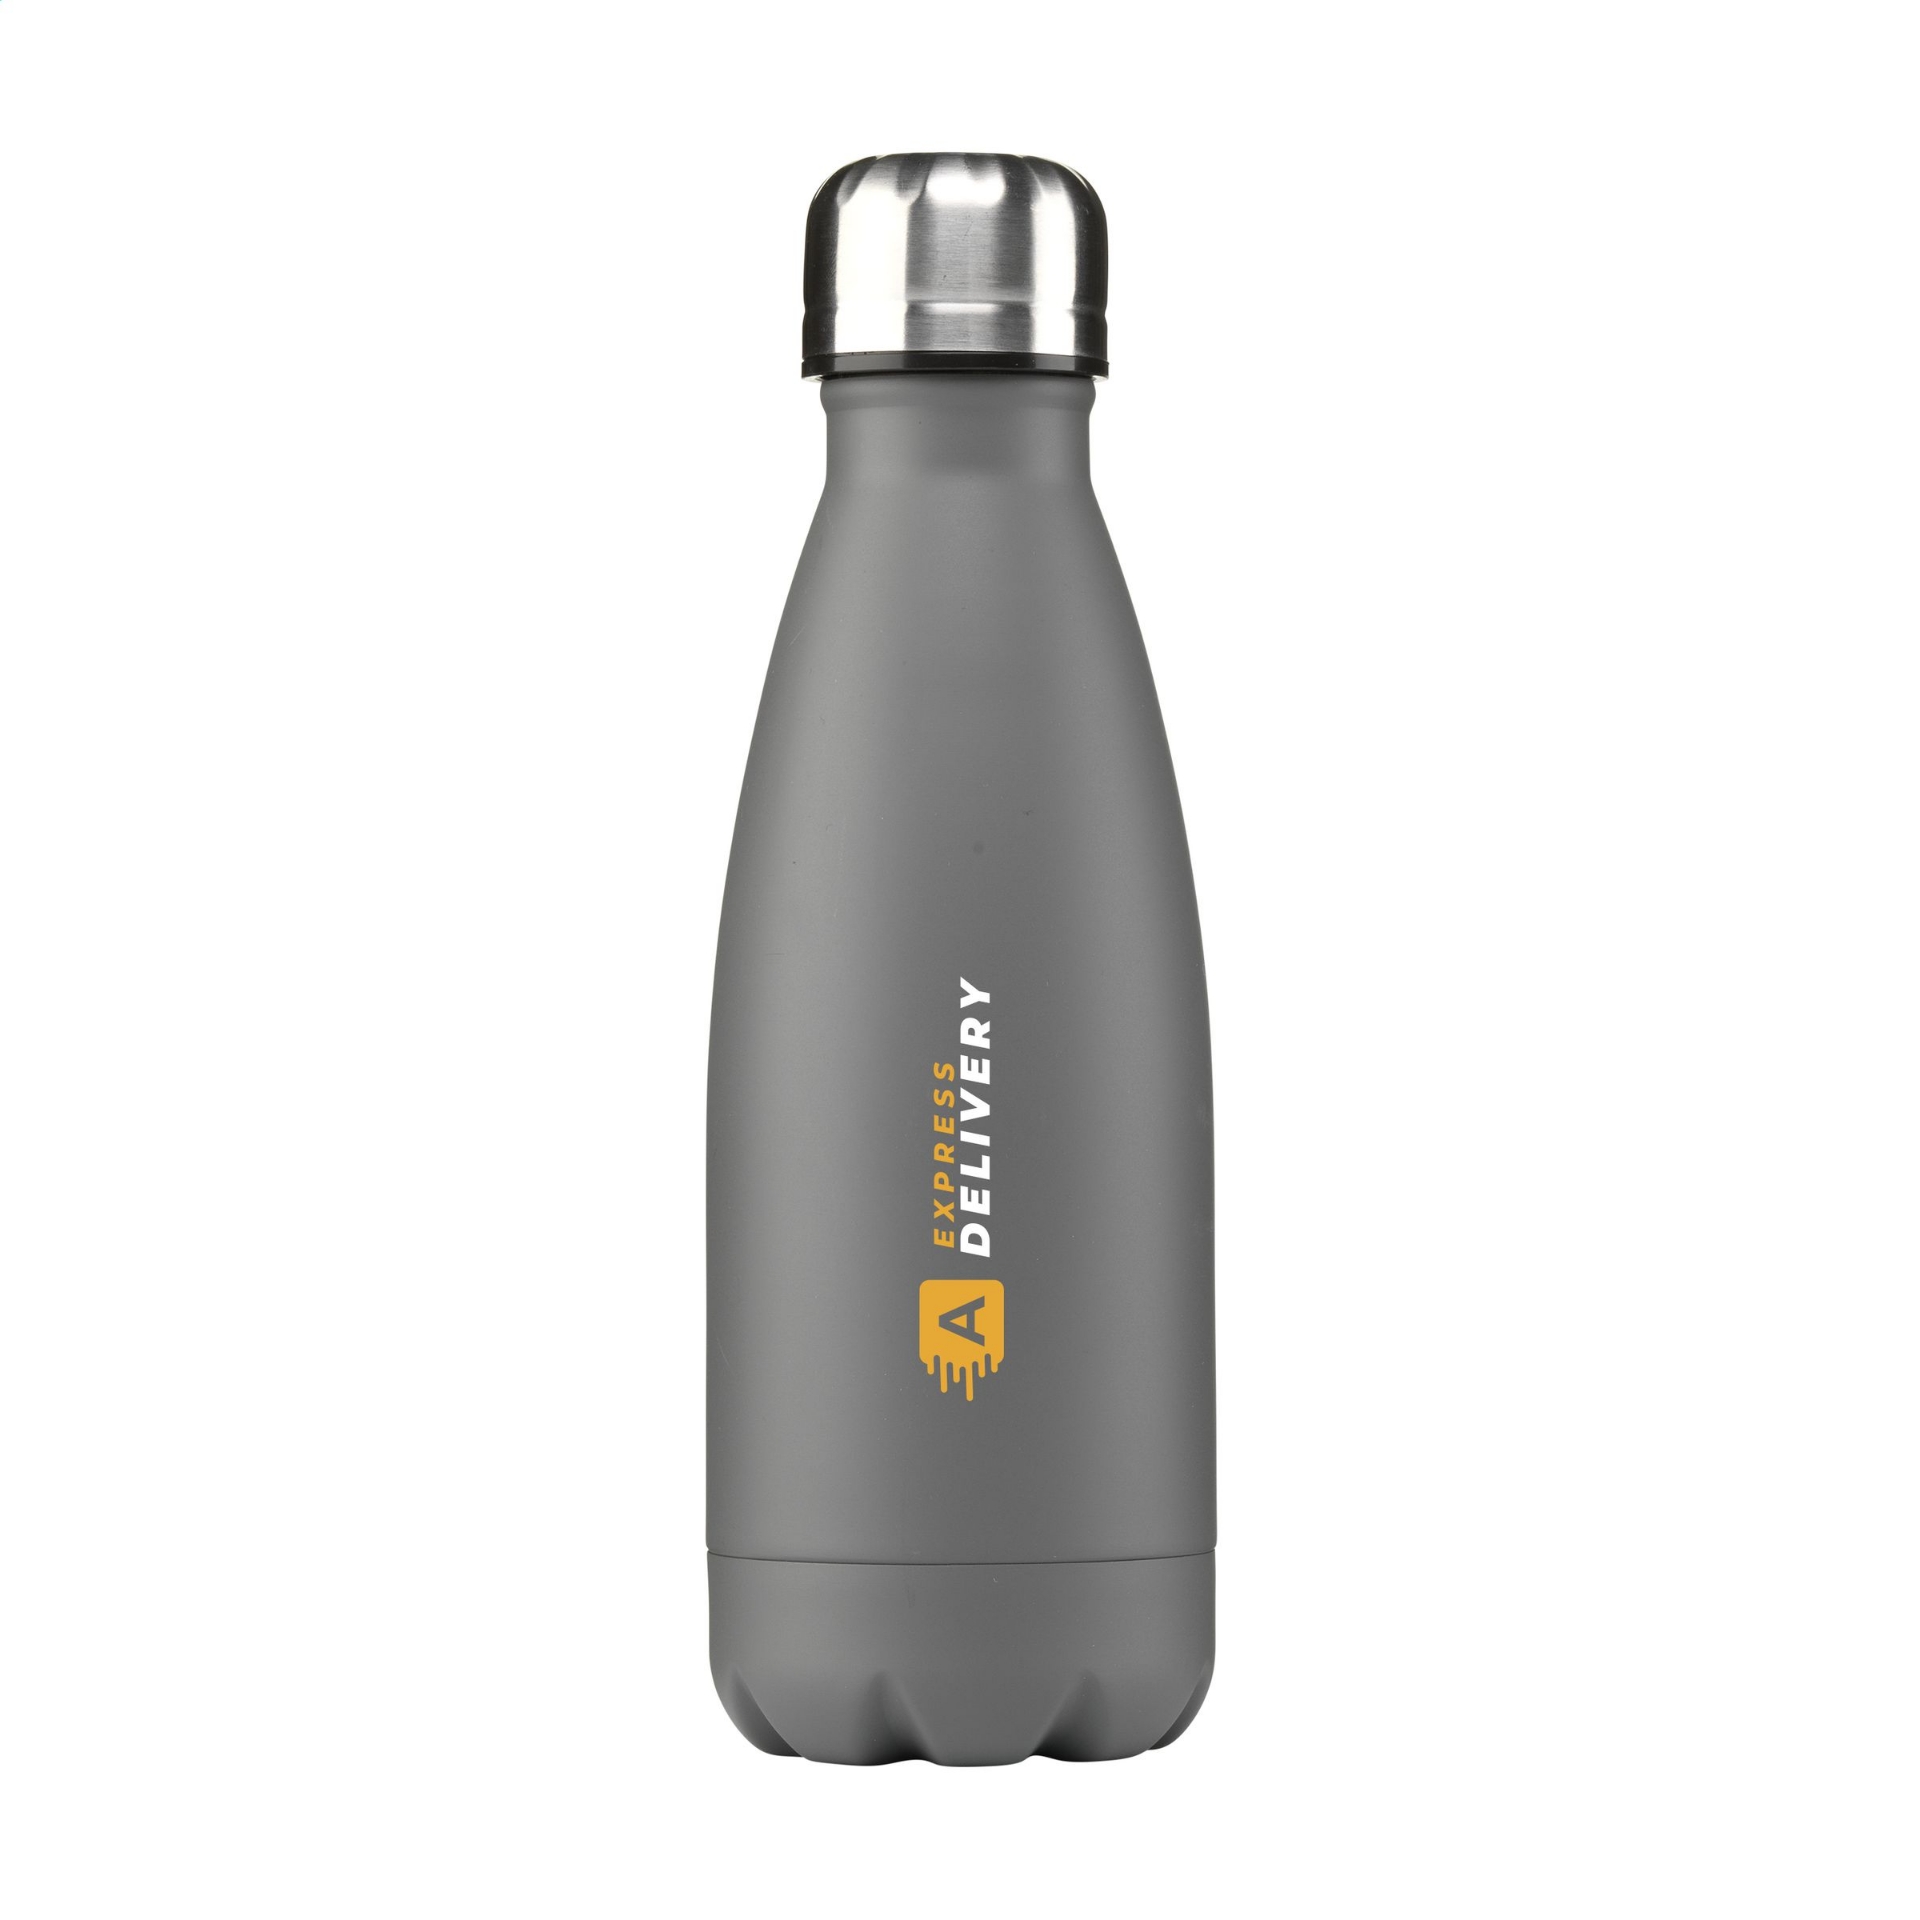 topflask bottle in grey